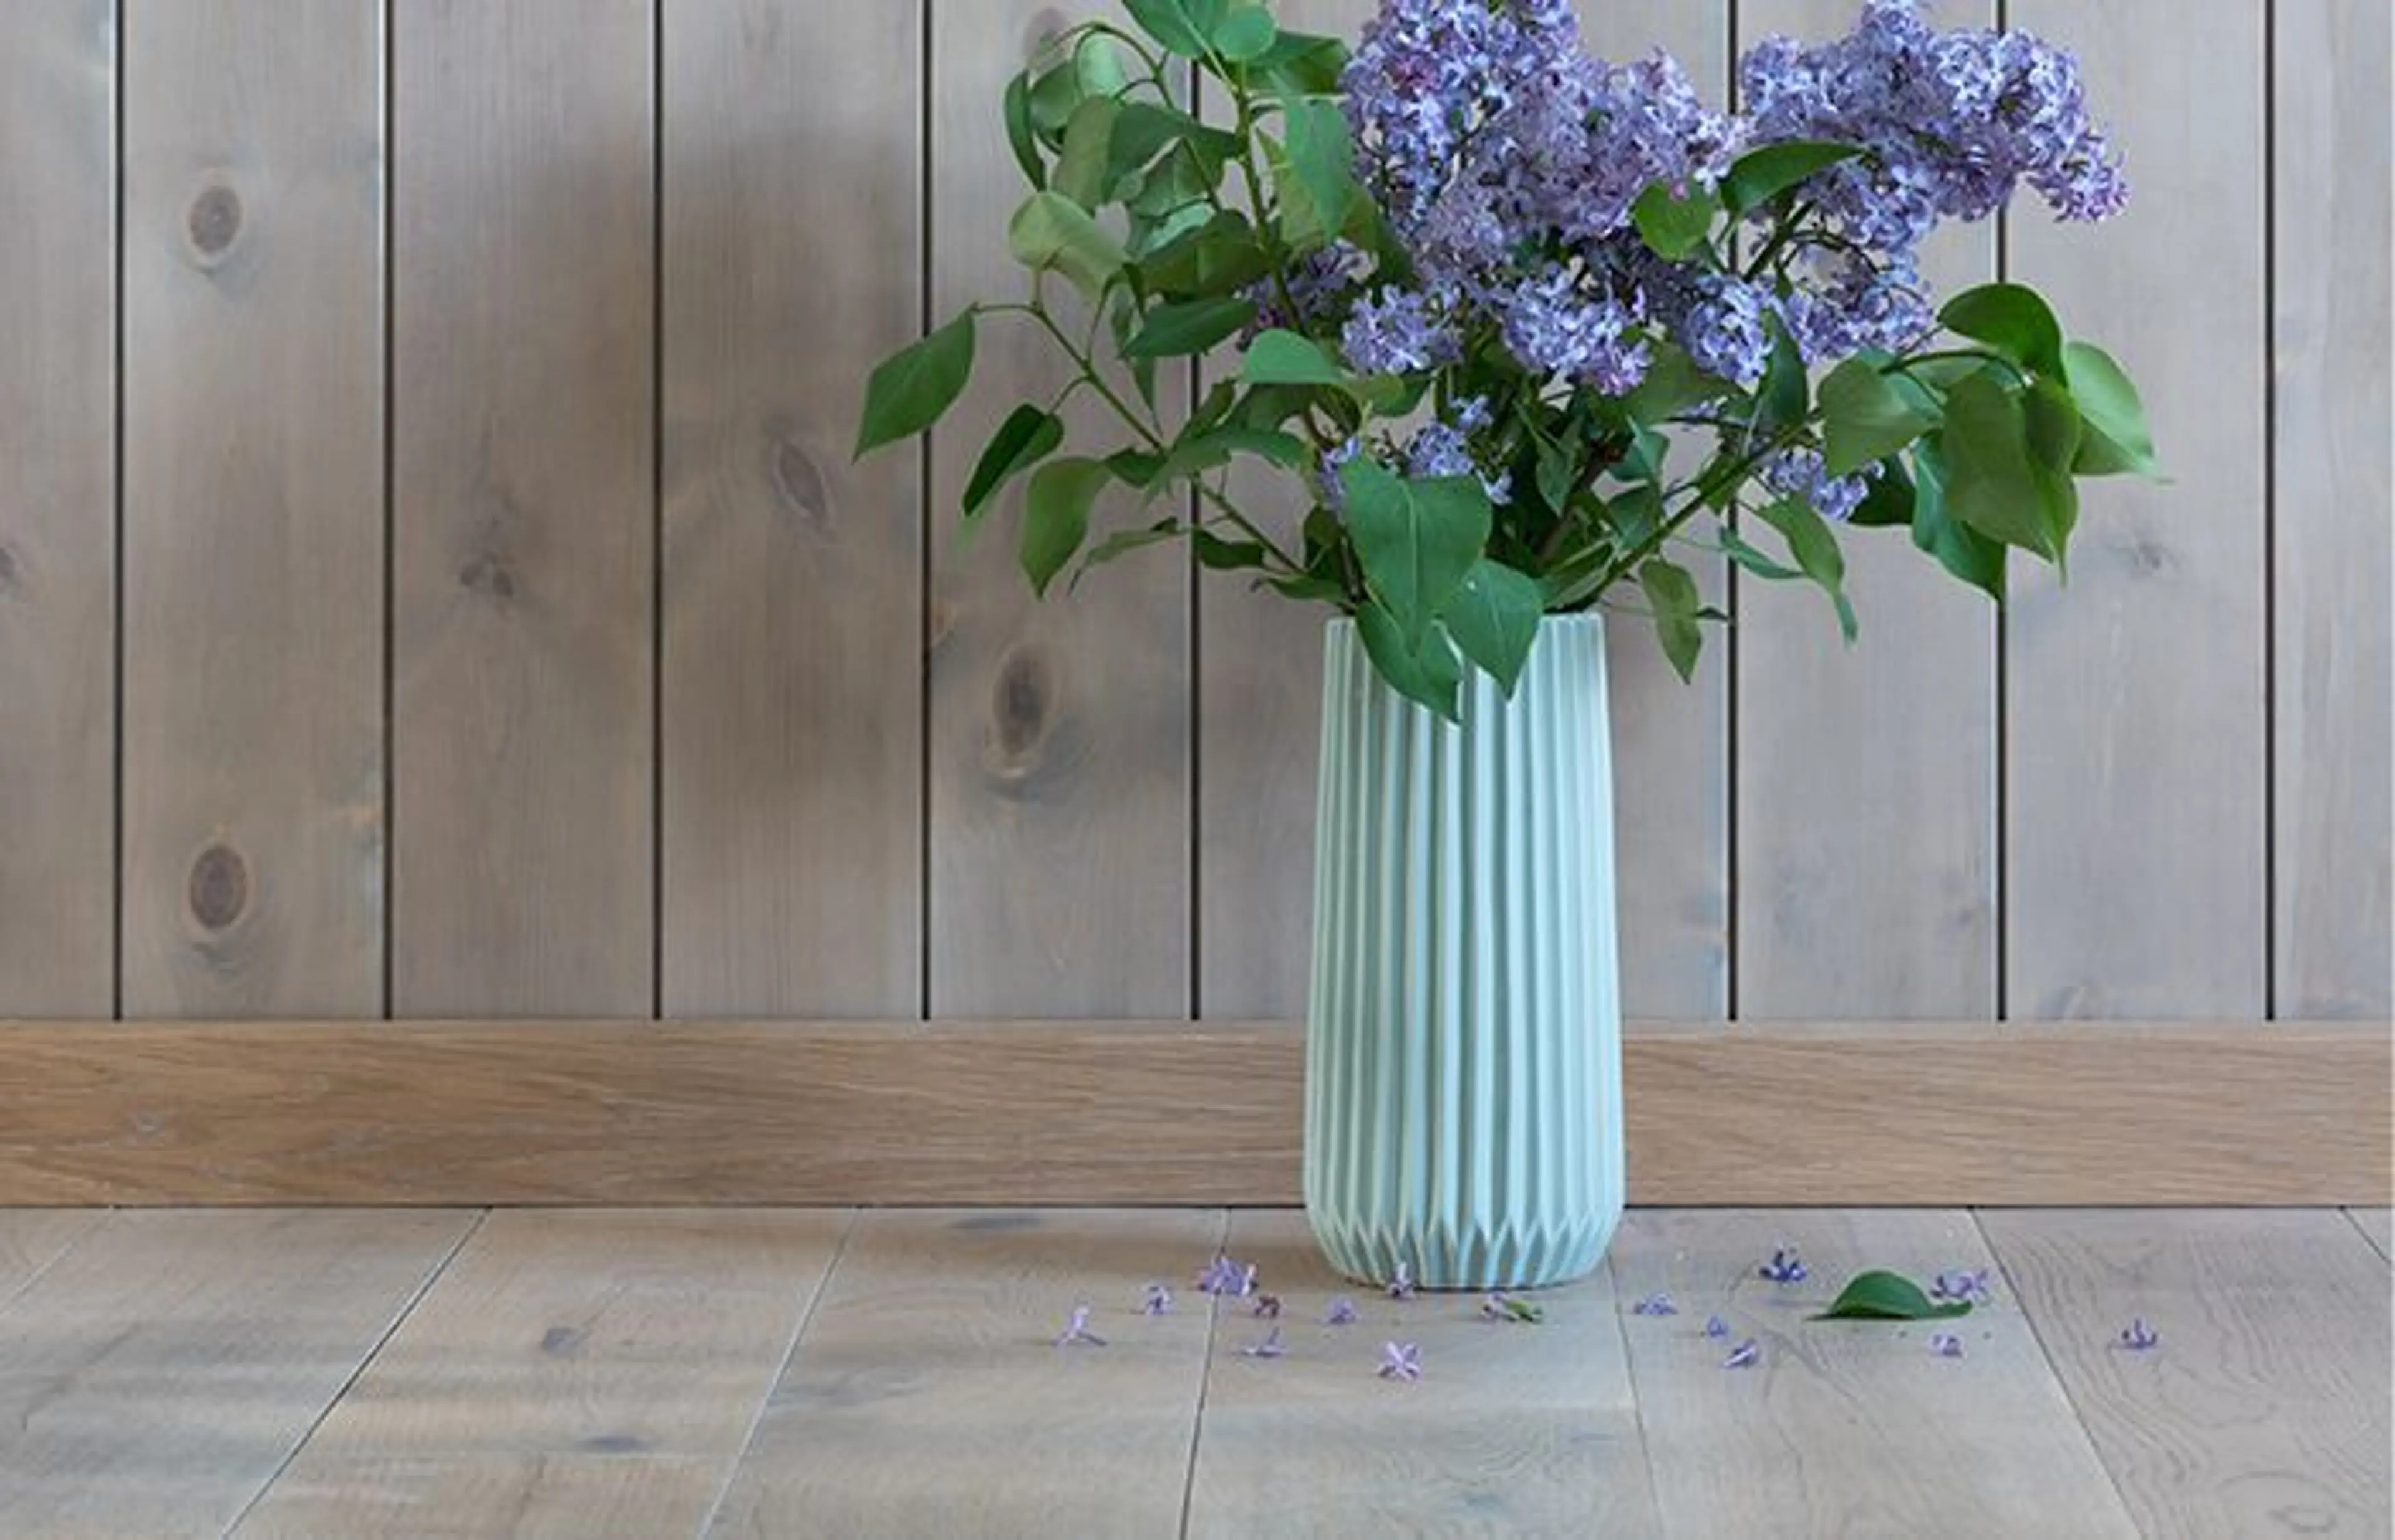 en vase med blomster står på gulvet